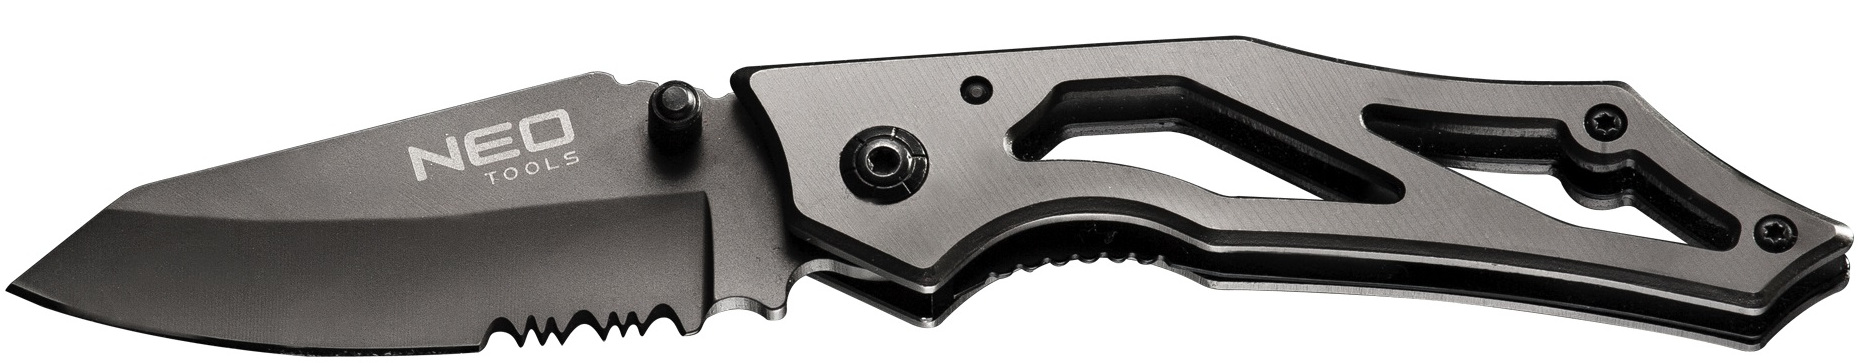 Нож нескладной Neo Tools 63-025 в Житомире